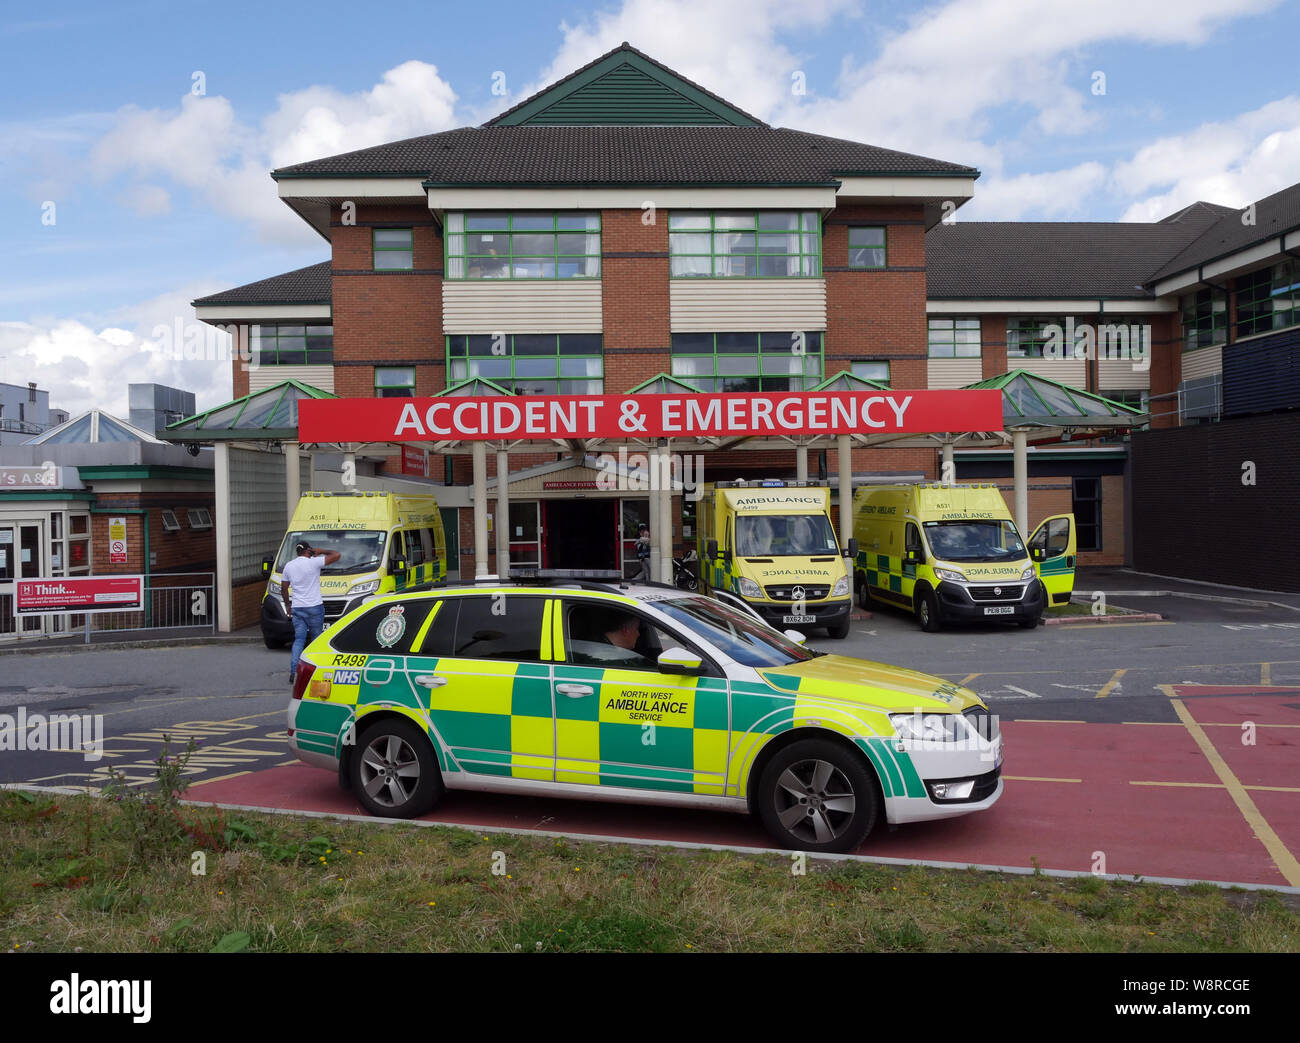 A&E Dept presso il Royal Bolton Hospital, a nord-ovest di servizio ambulanza veicoli, Bolton, Lancashire, Greater Manchester, Inghilterra UK fotografia DON TONGE Foto Stock